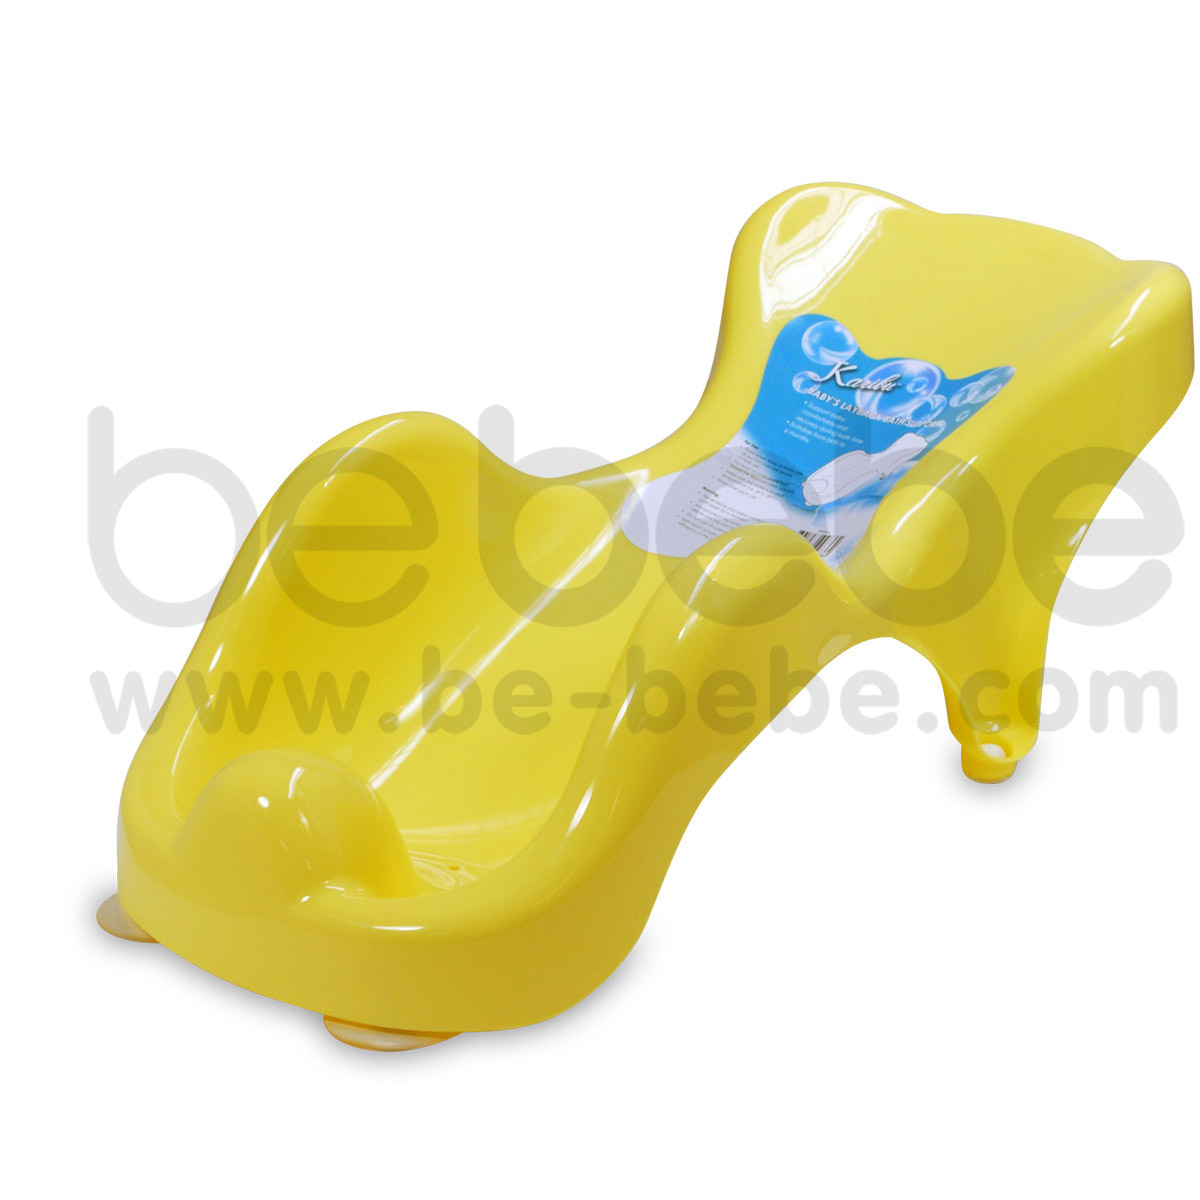 Karibu : ที่นั่งอาบน้ำเด็ก/สีเหลือง